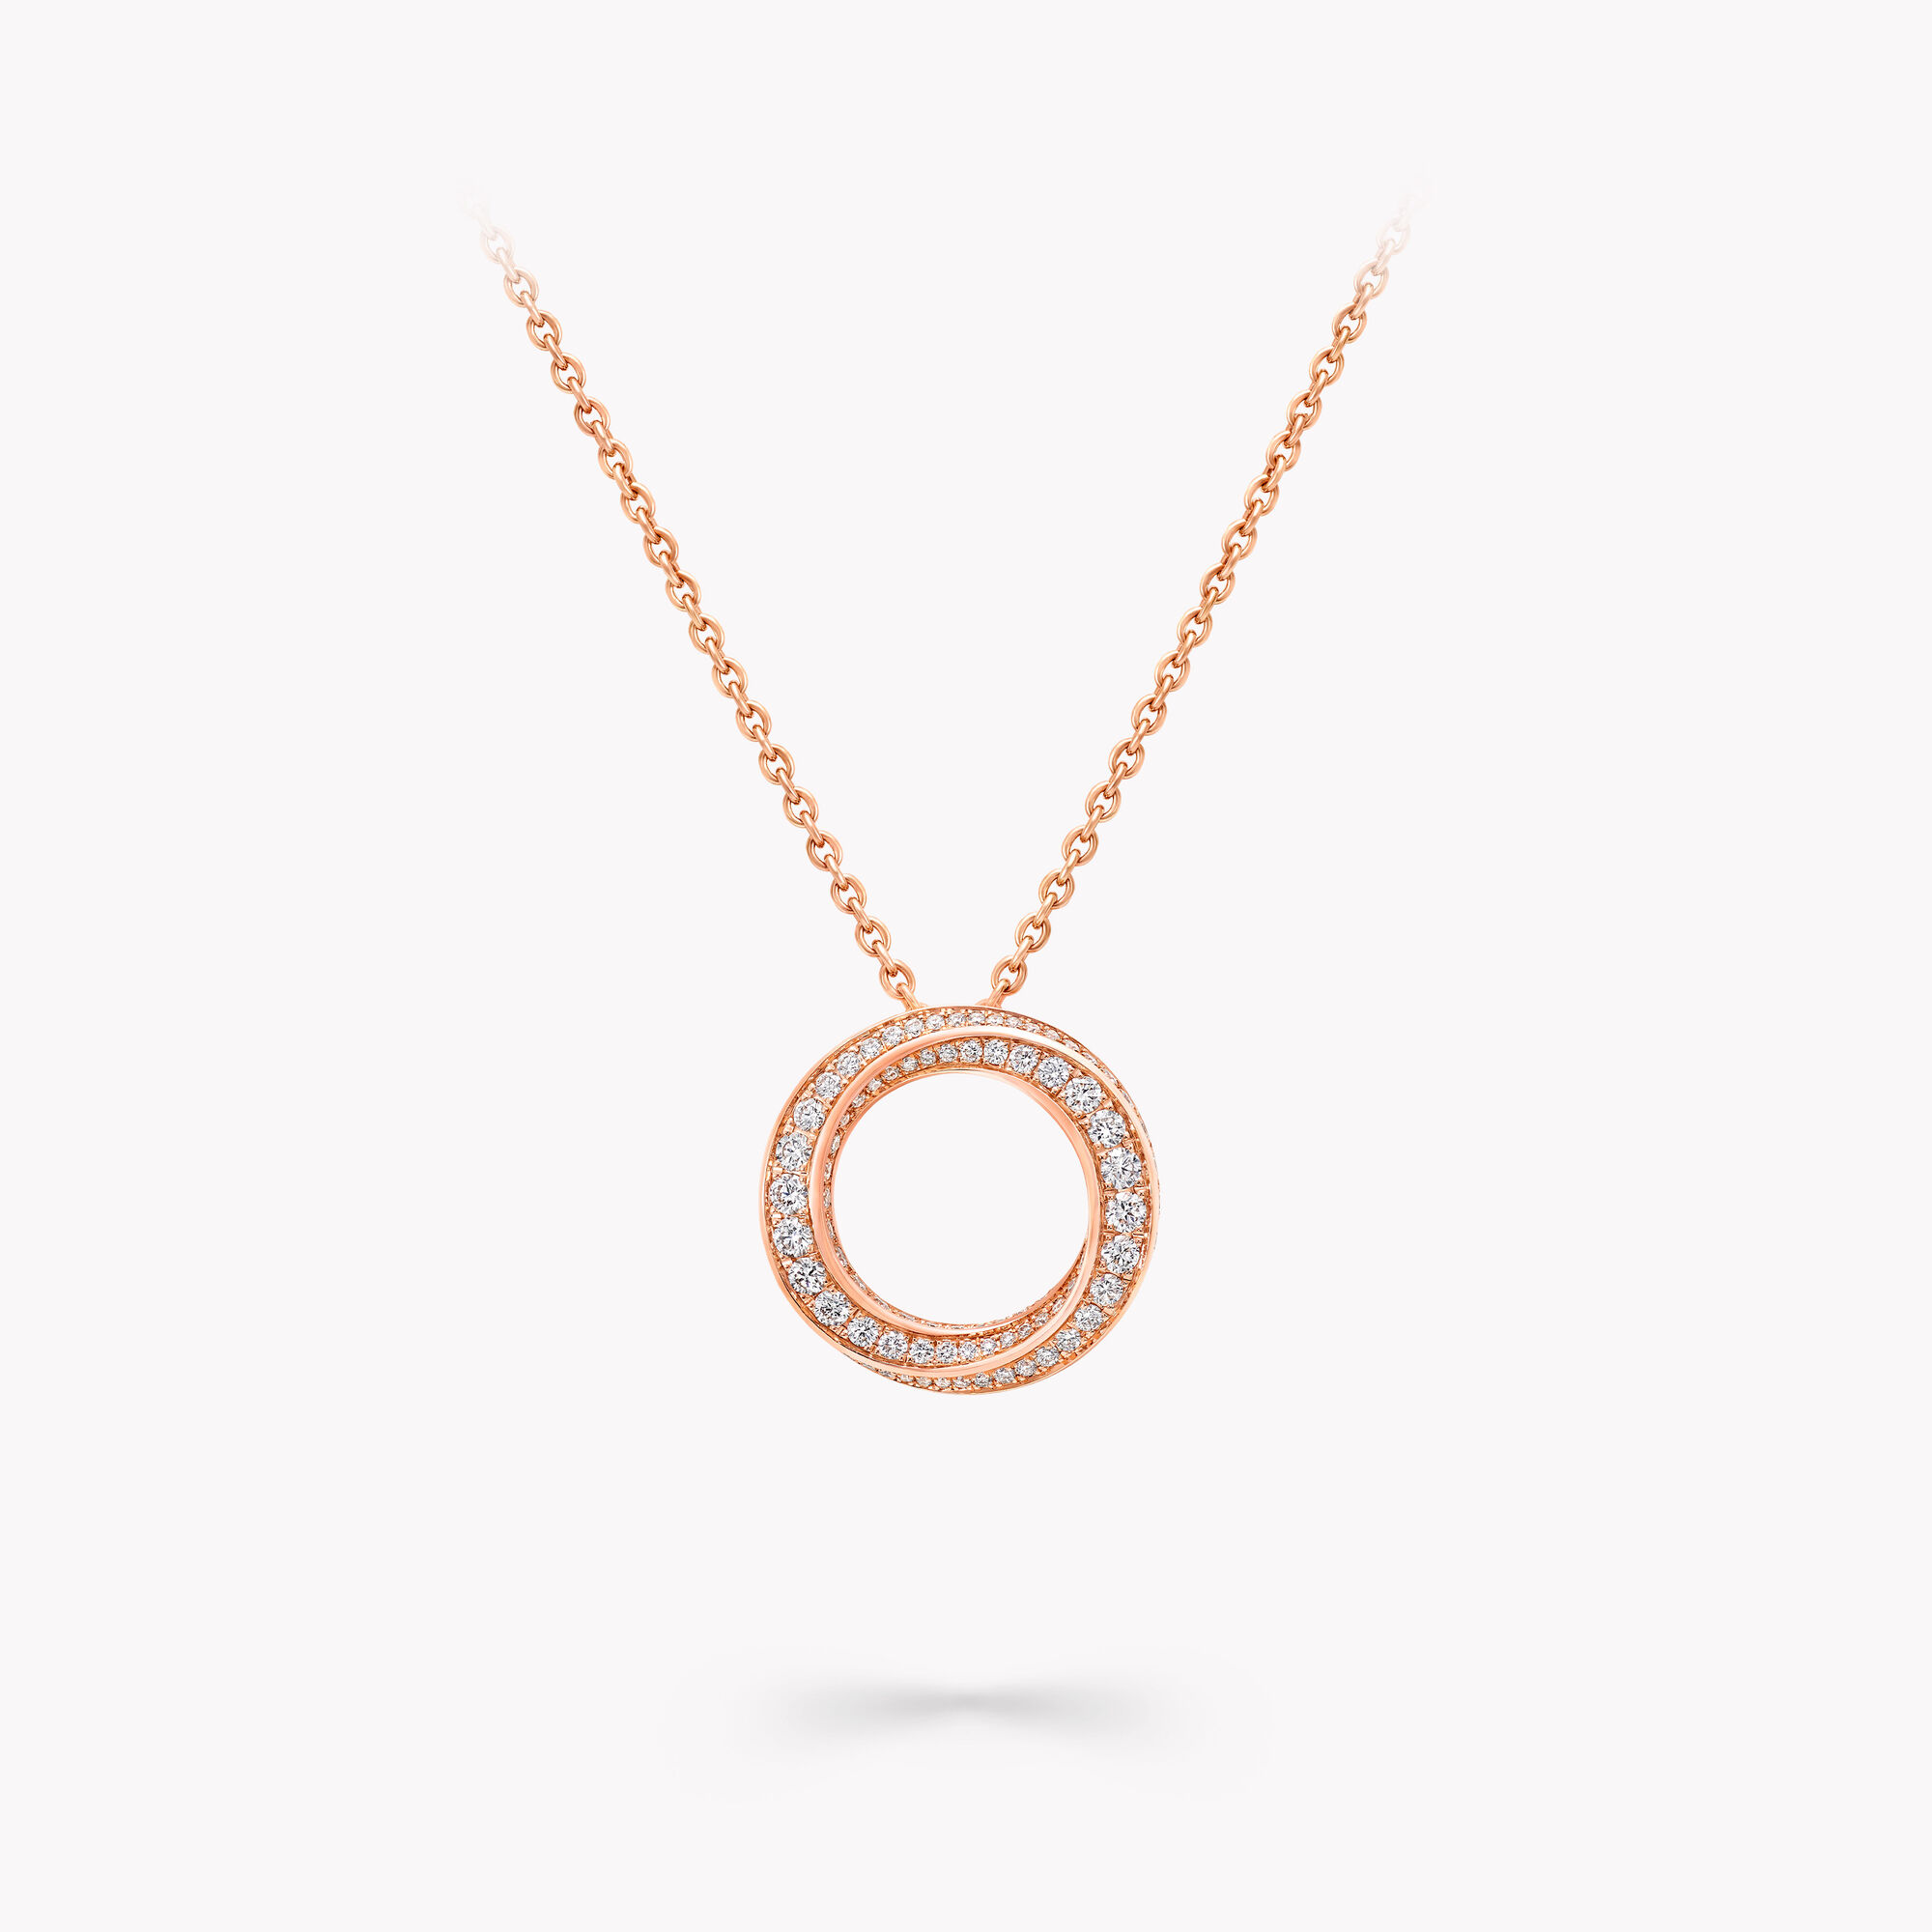 Round Spiral Necklace